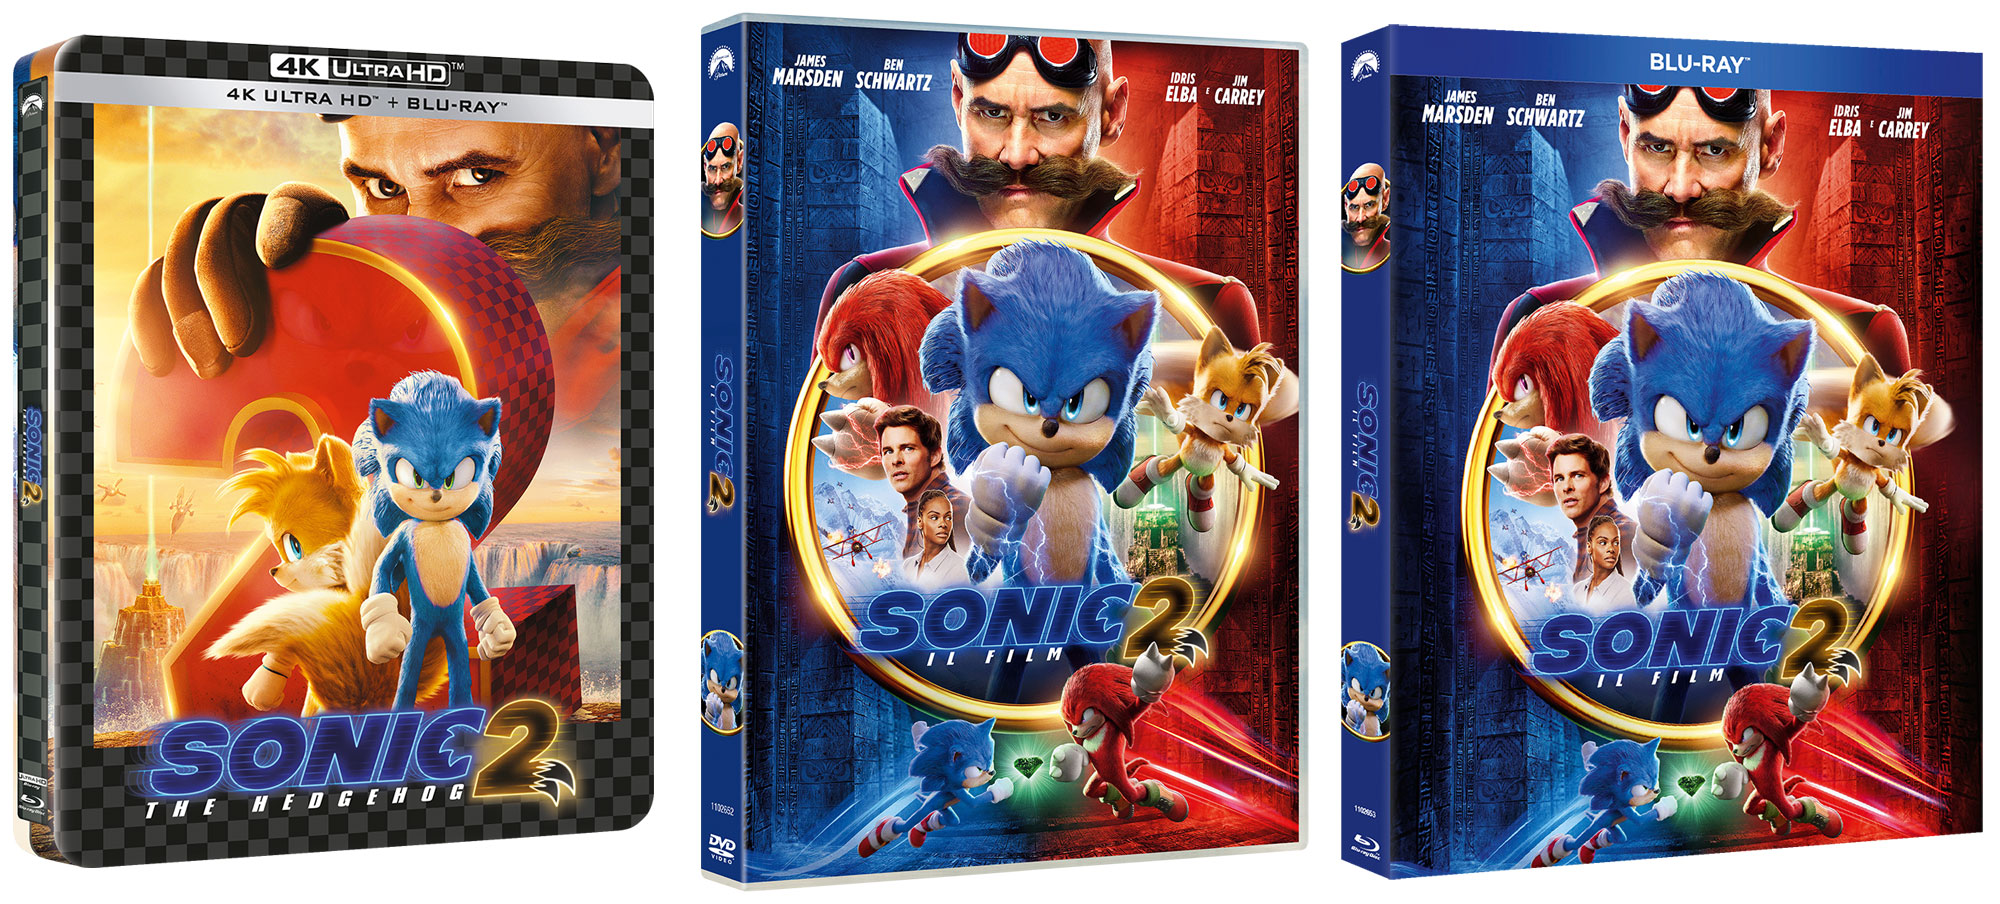 Sonic 2 - Il Film  in DVD, Blu-ray e Steelbook 4K UHD con Blu-ray